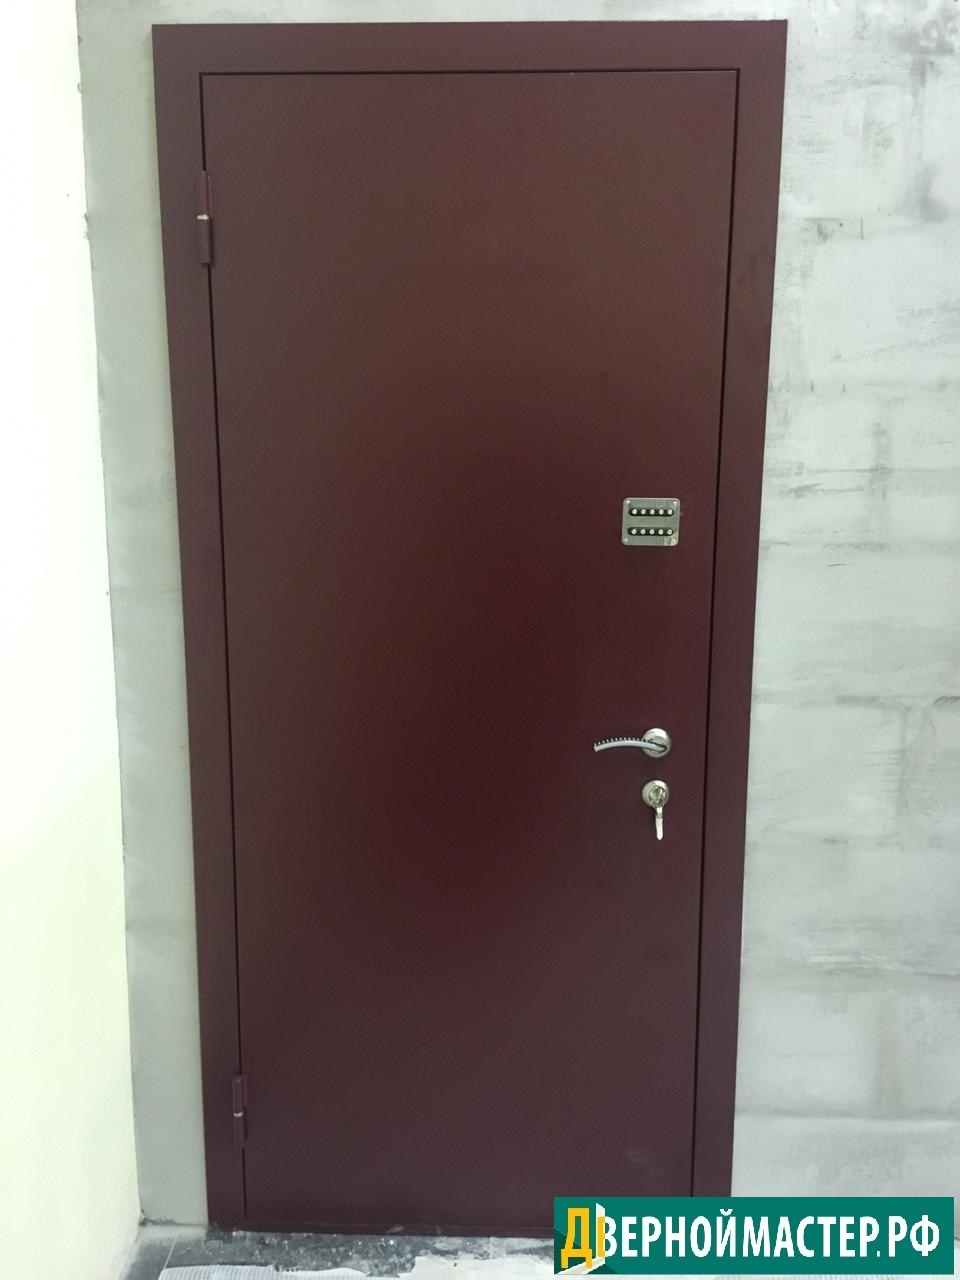 Металлическая дверь с кодовым замком, установлена в одном из офисов Москвы